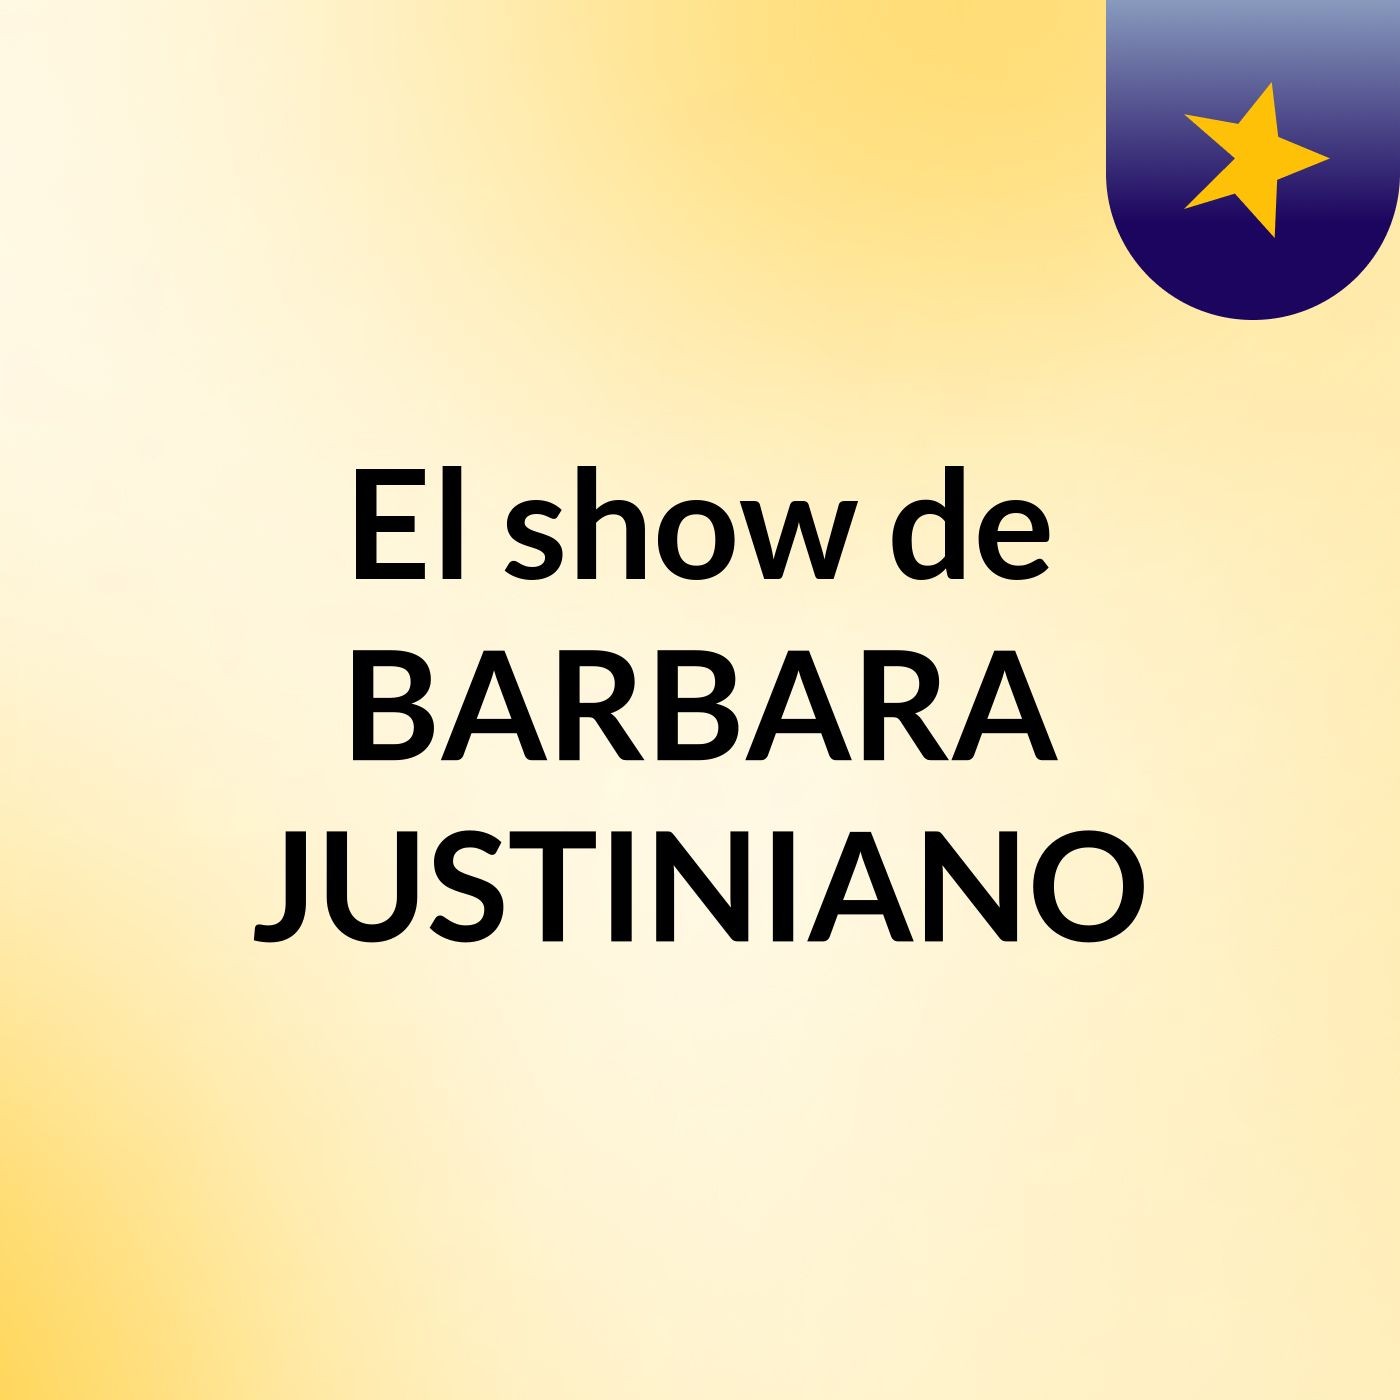 El show de BARBARA JUSTINIANO